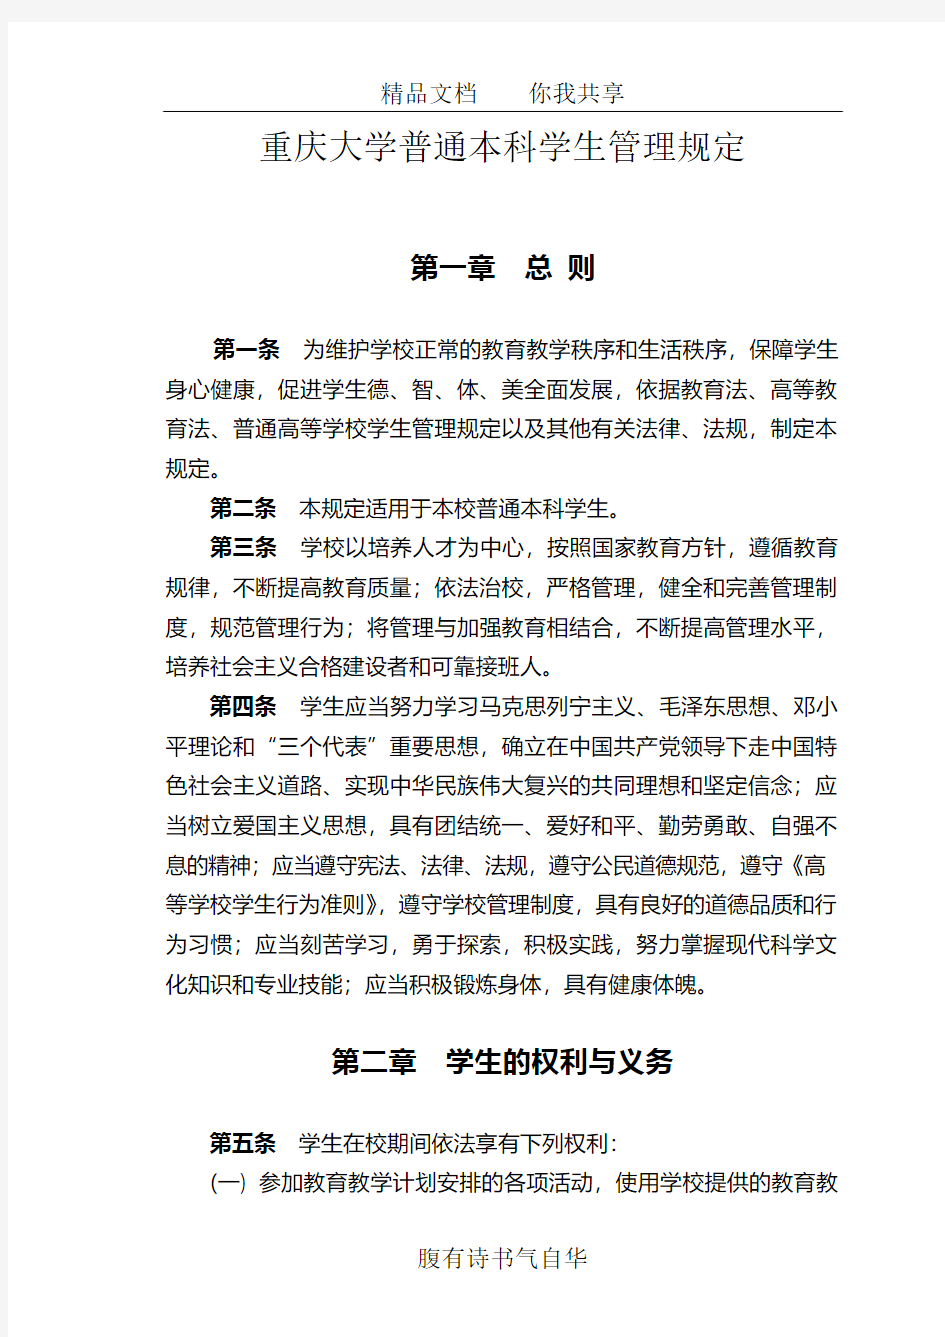 重庆大学普通本科学生管理规定